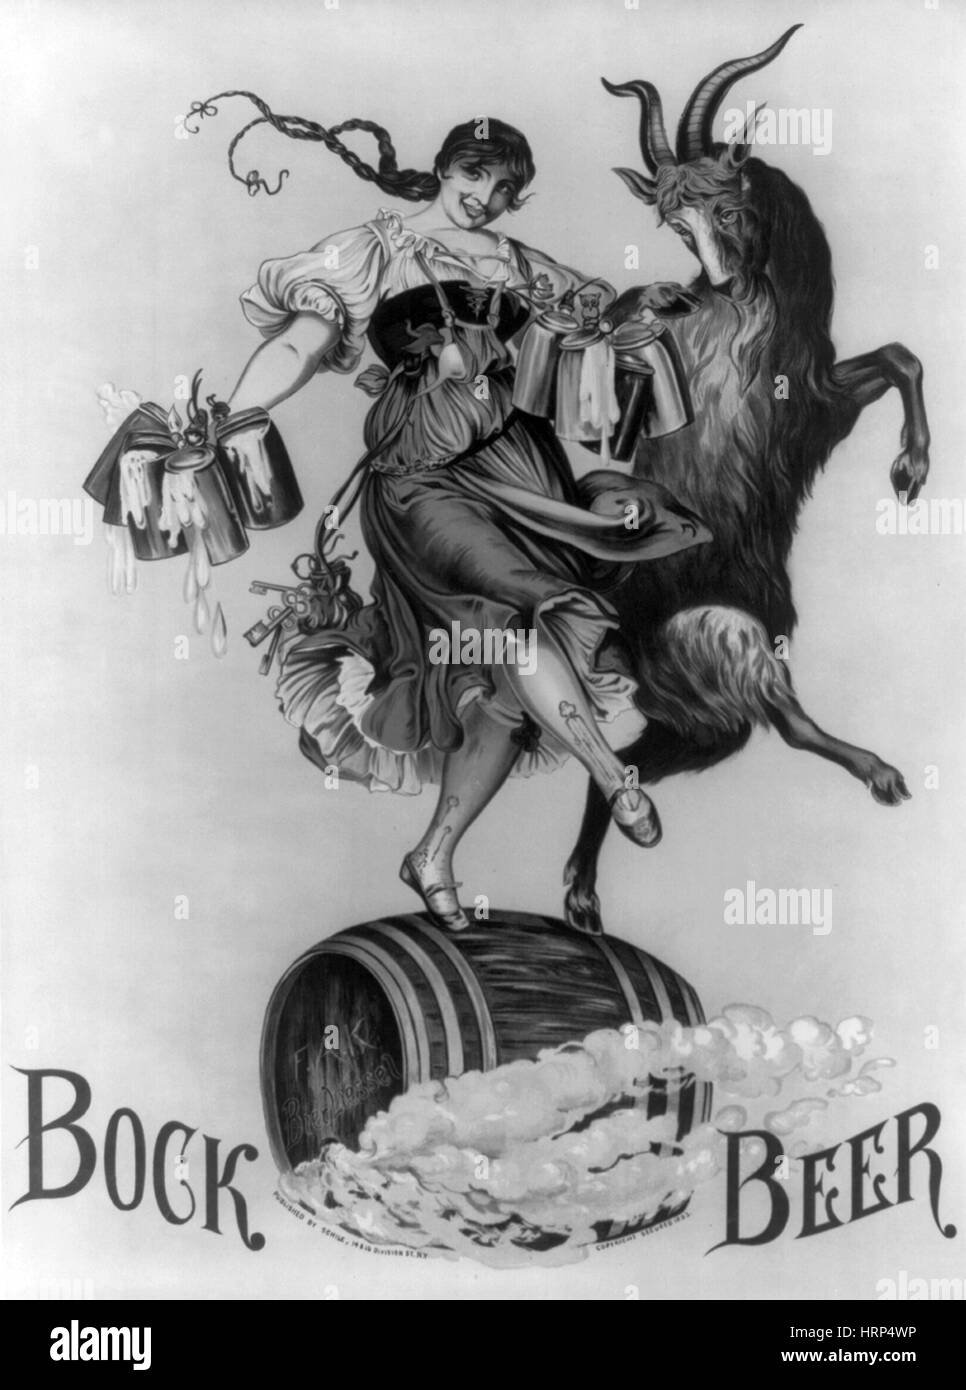 Bock Beer, 1883 Stock Photo